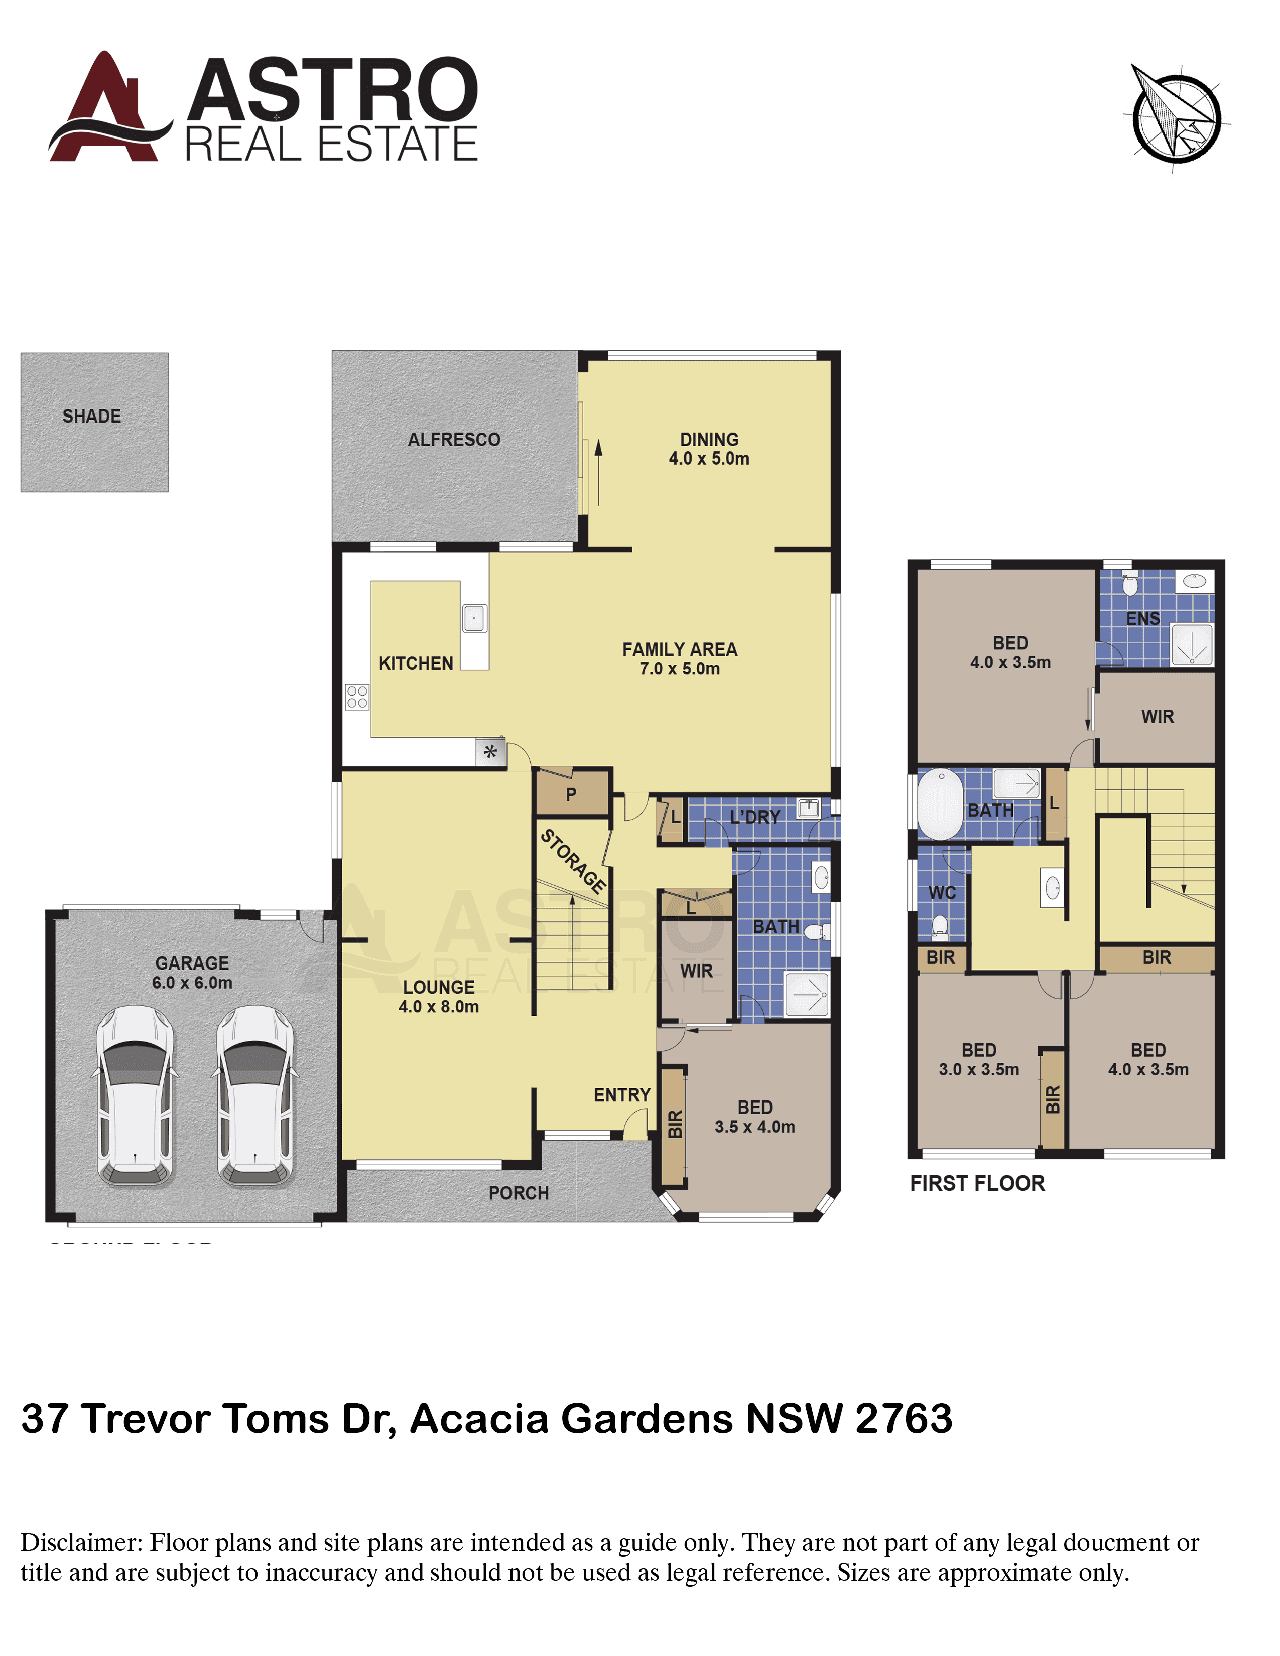 37 Trevor Toms Dr, Acacia Gardens, NSW 2763